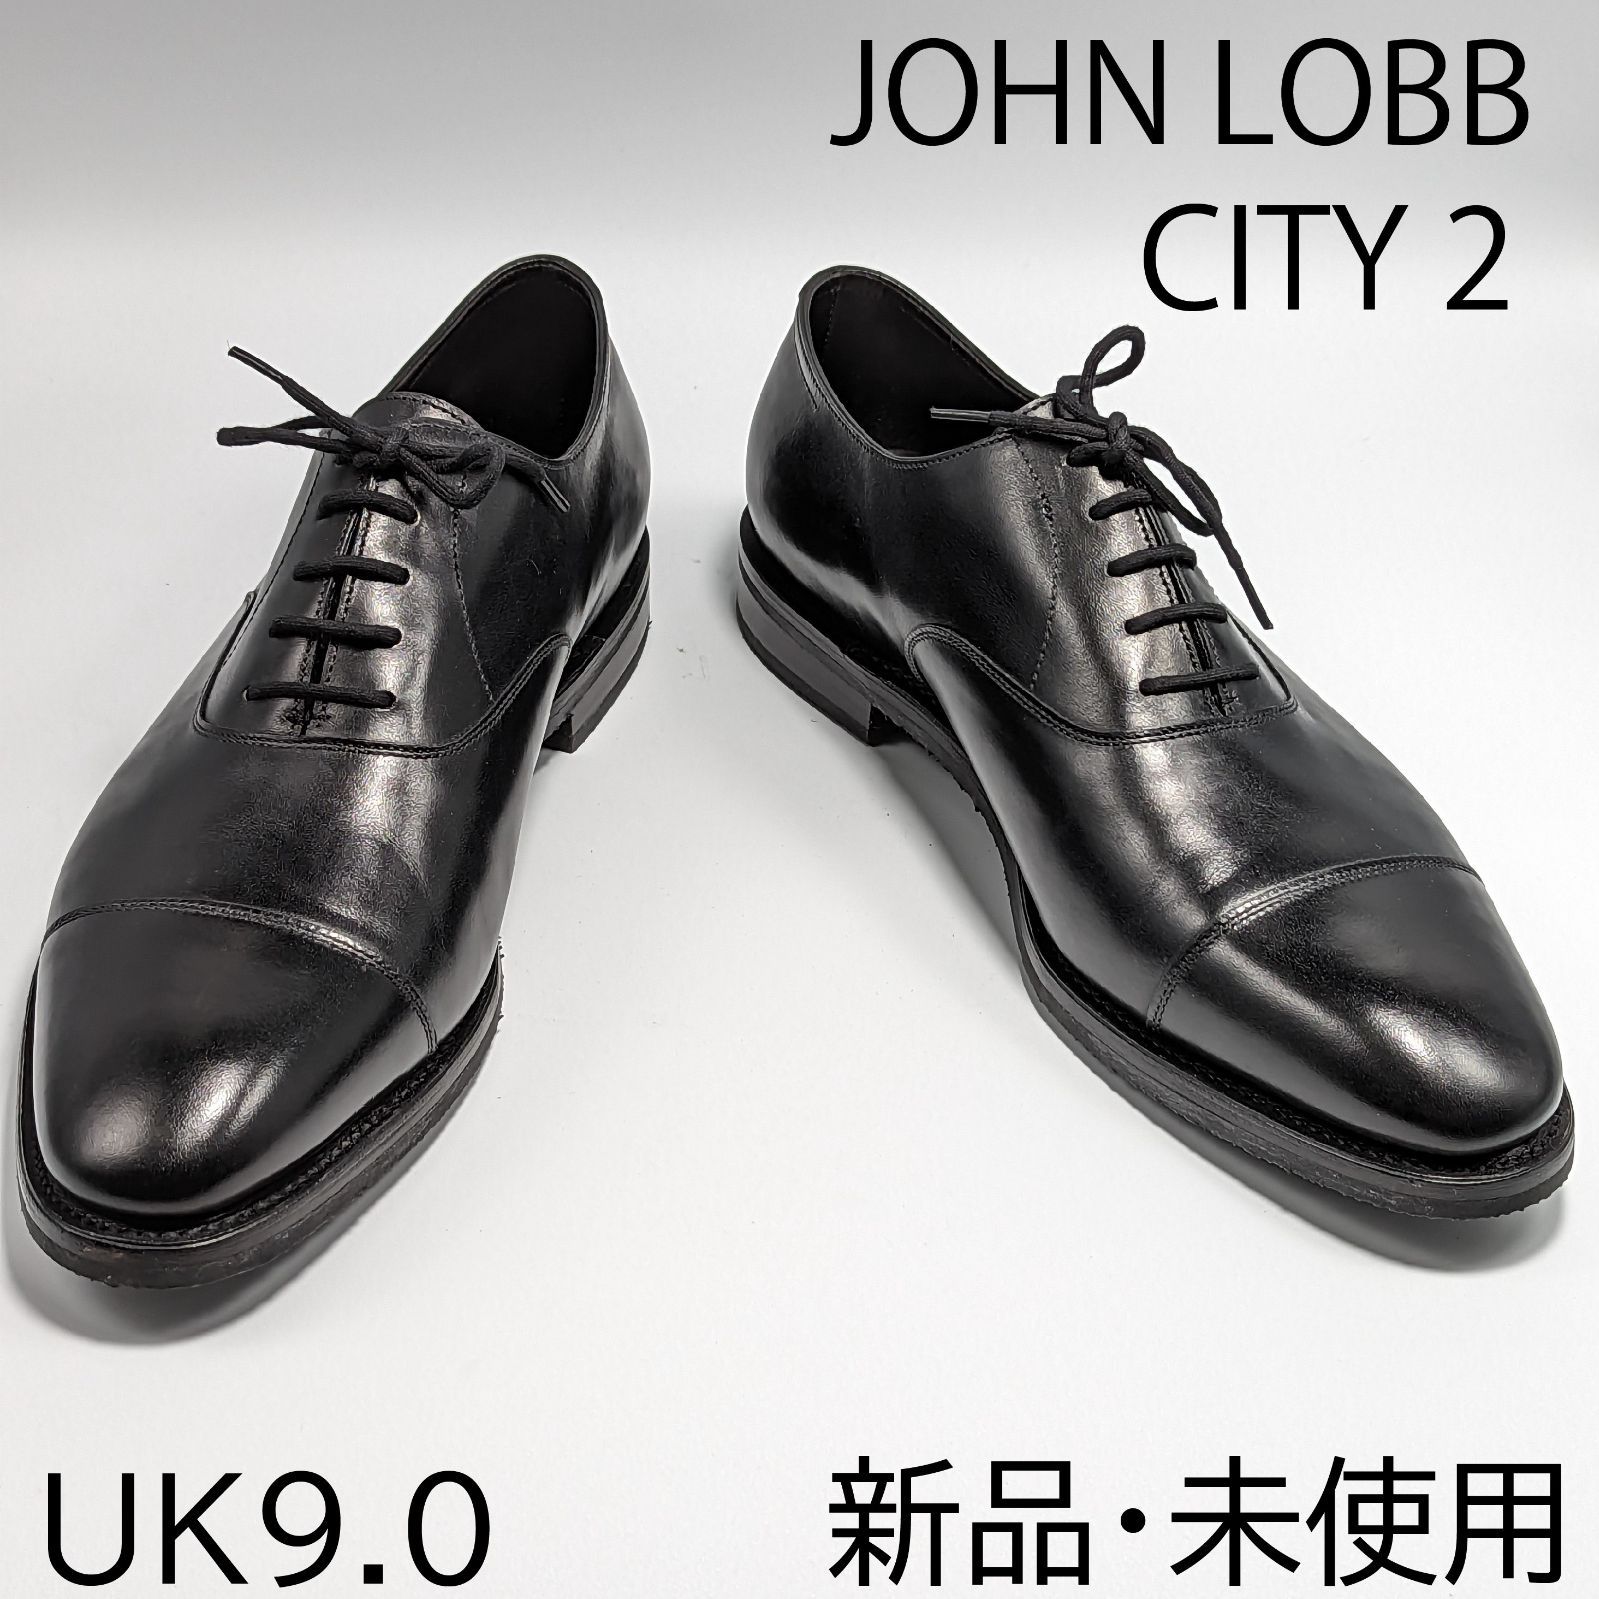 36,999円JOHN LOBB(ジョンロブ) CITYⅡシティツー